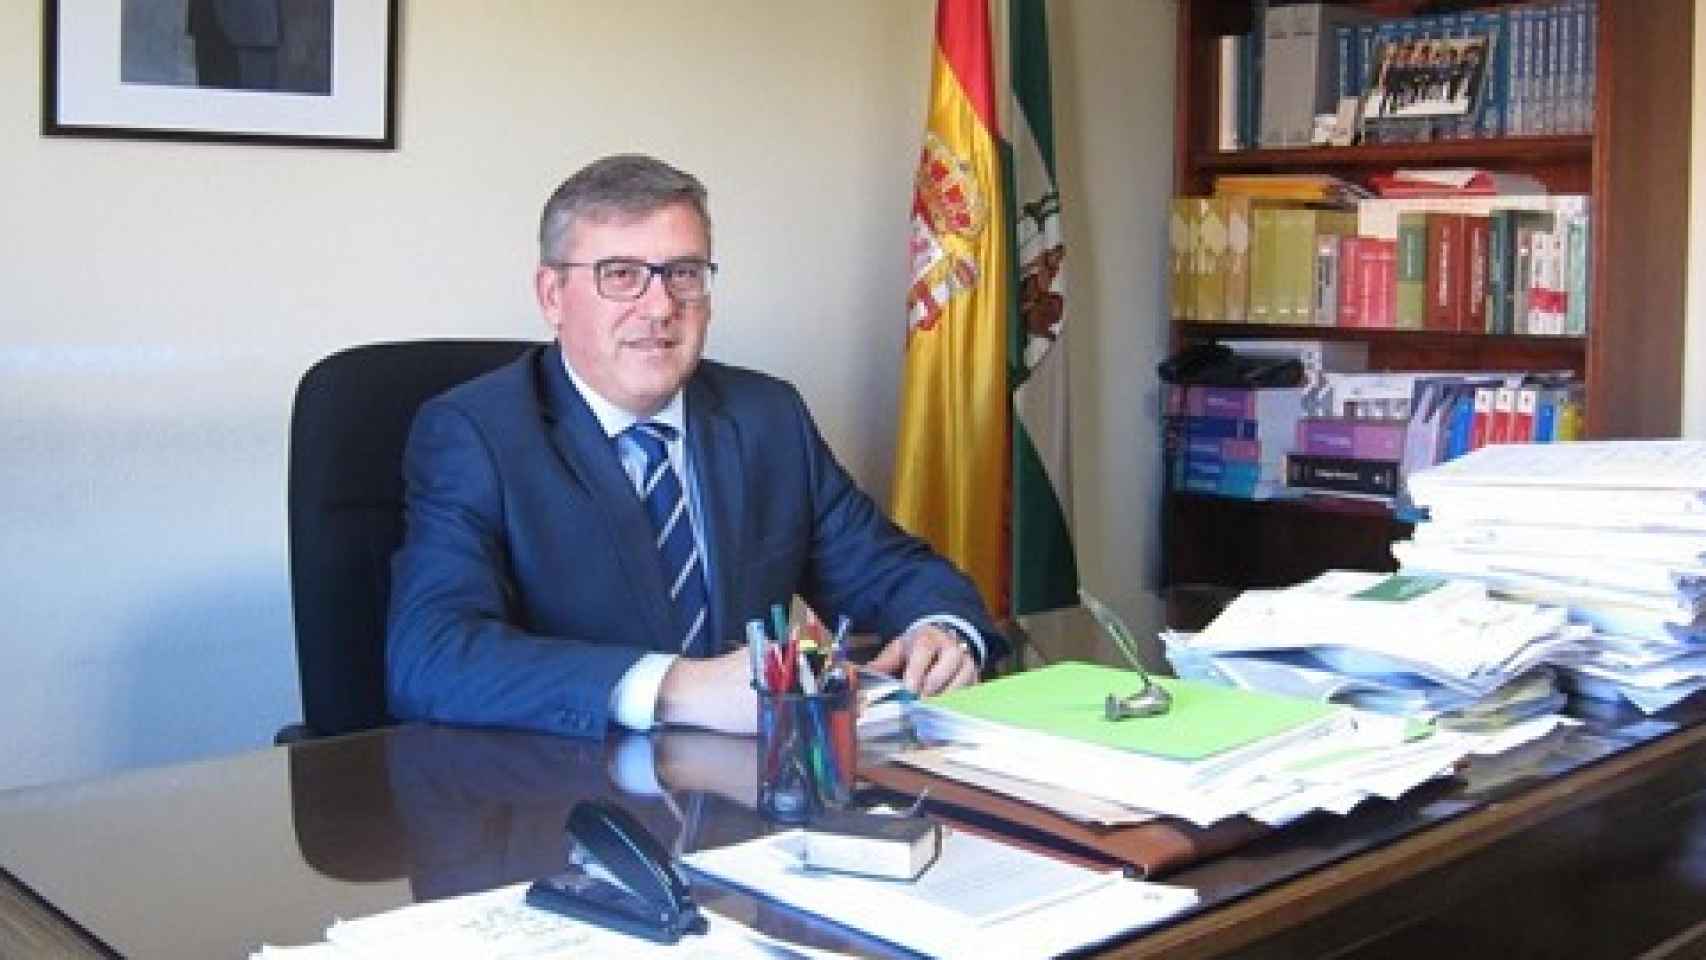 El juez decano de Córdoba, Miguel Ángel Pareja. Fue quien absolvió a los seis clientes que pagaron a una menor a cambio de mantener relaciones sexuales con ella.